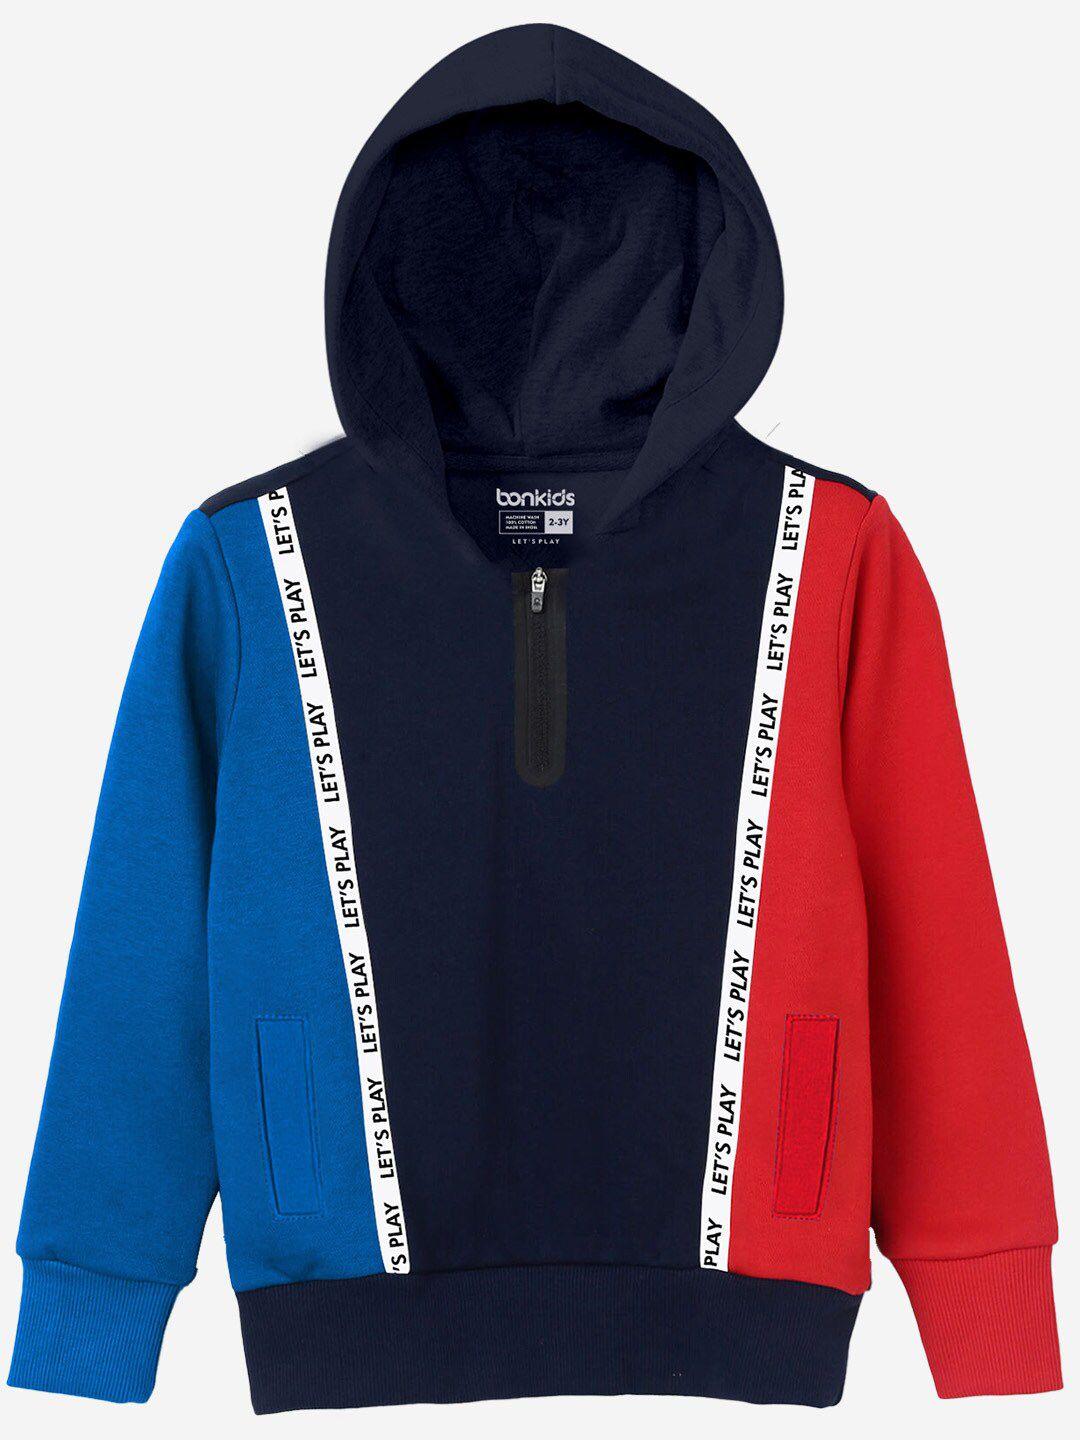 bonkids boys colourblocked cotton hooded pullover sweatshirt